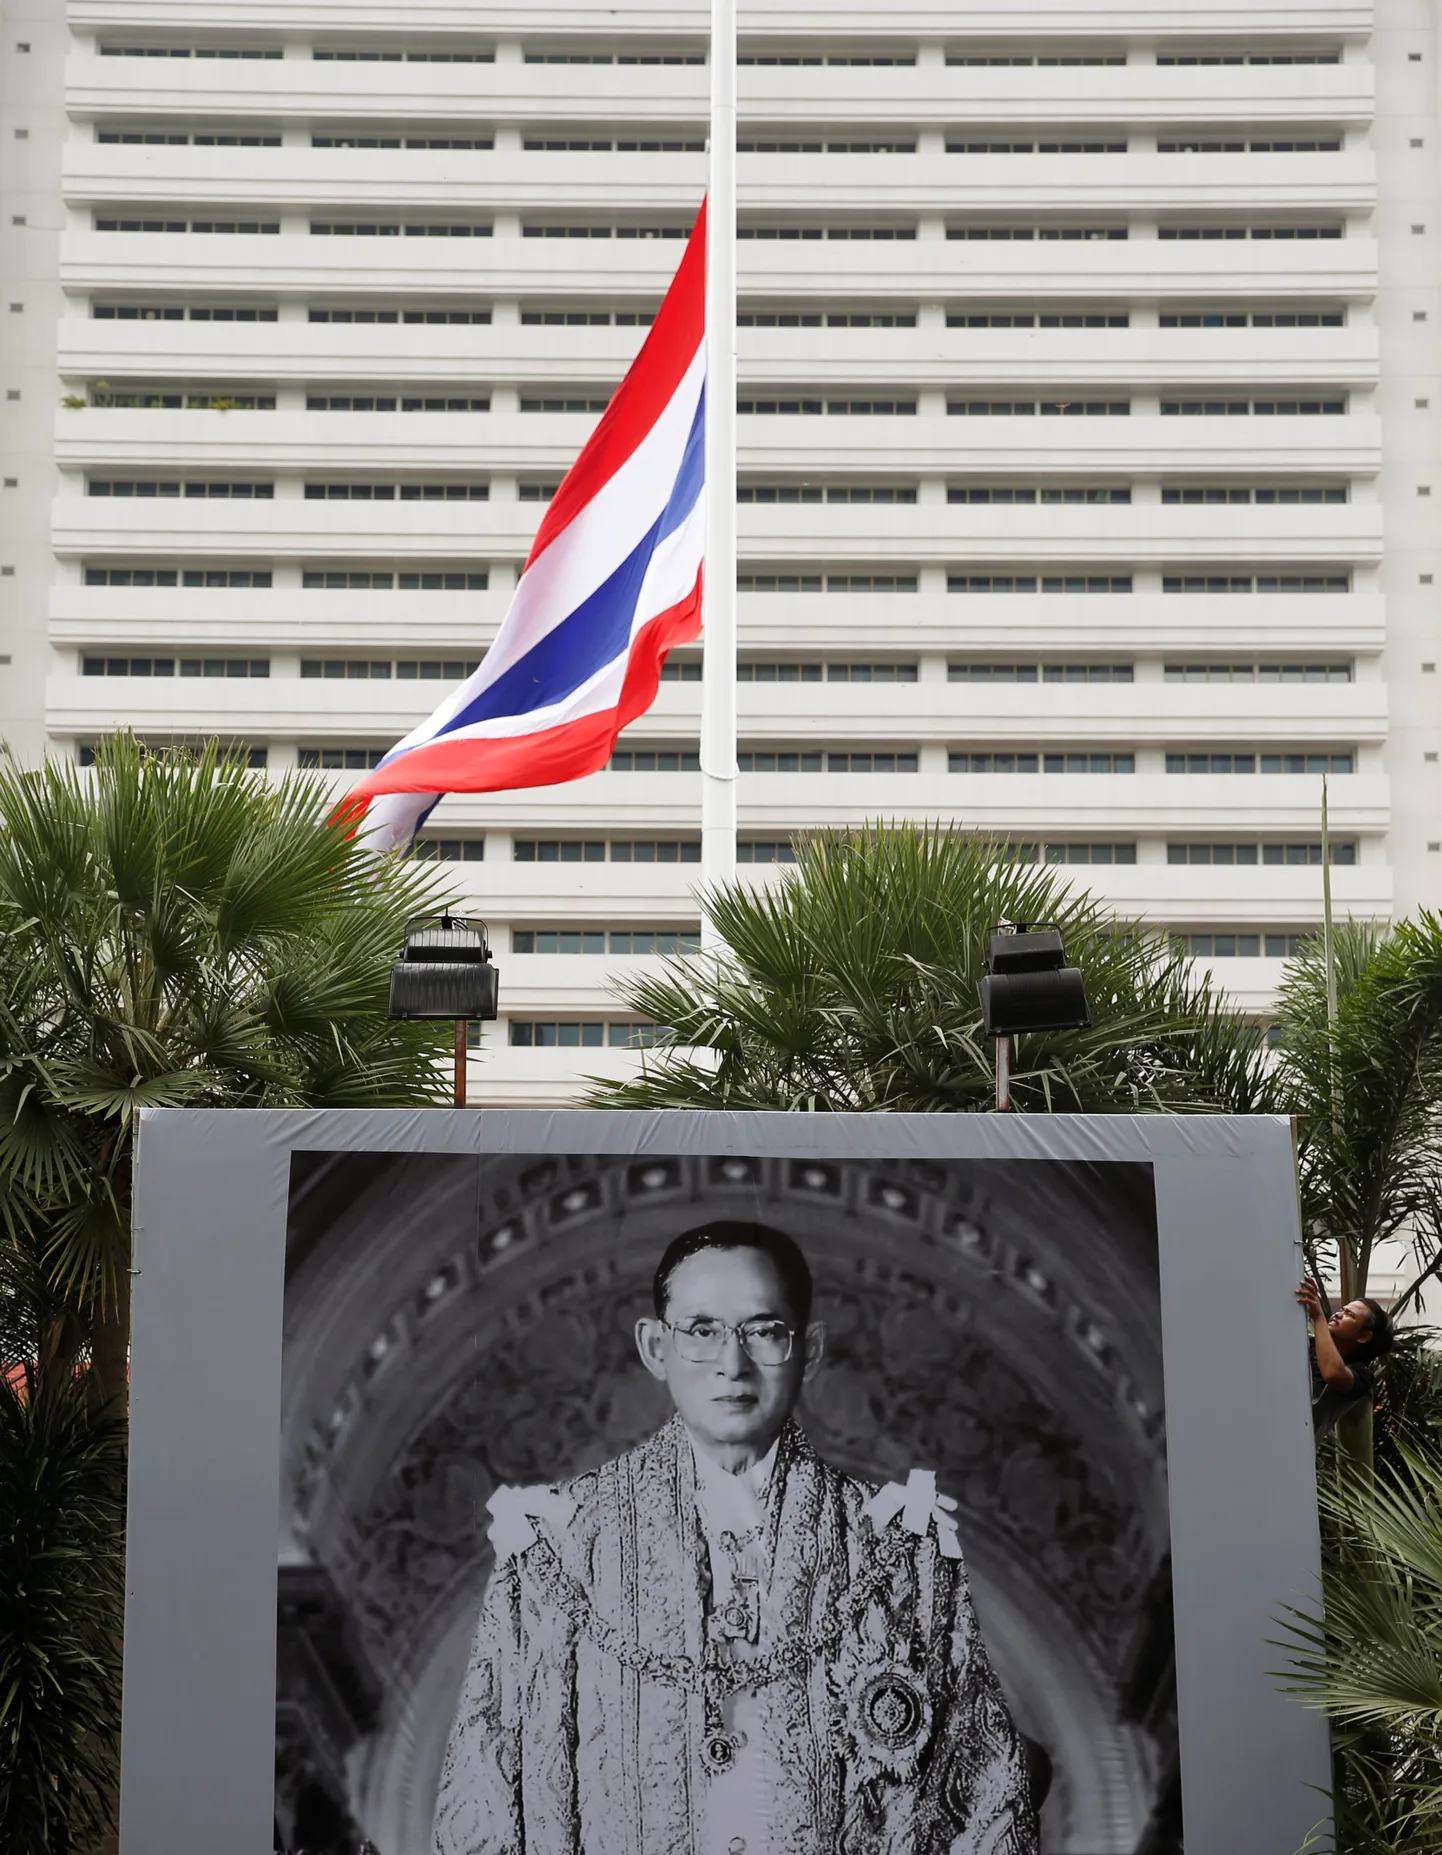 Tai lahkunud kuningaa Bhumibol Adulyadeji portree ja riigilipp politsei peakorteri ees.